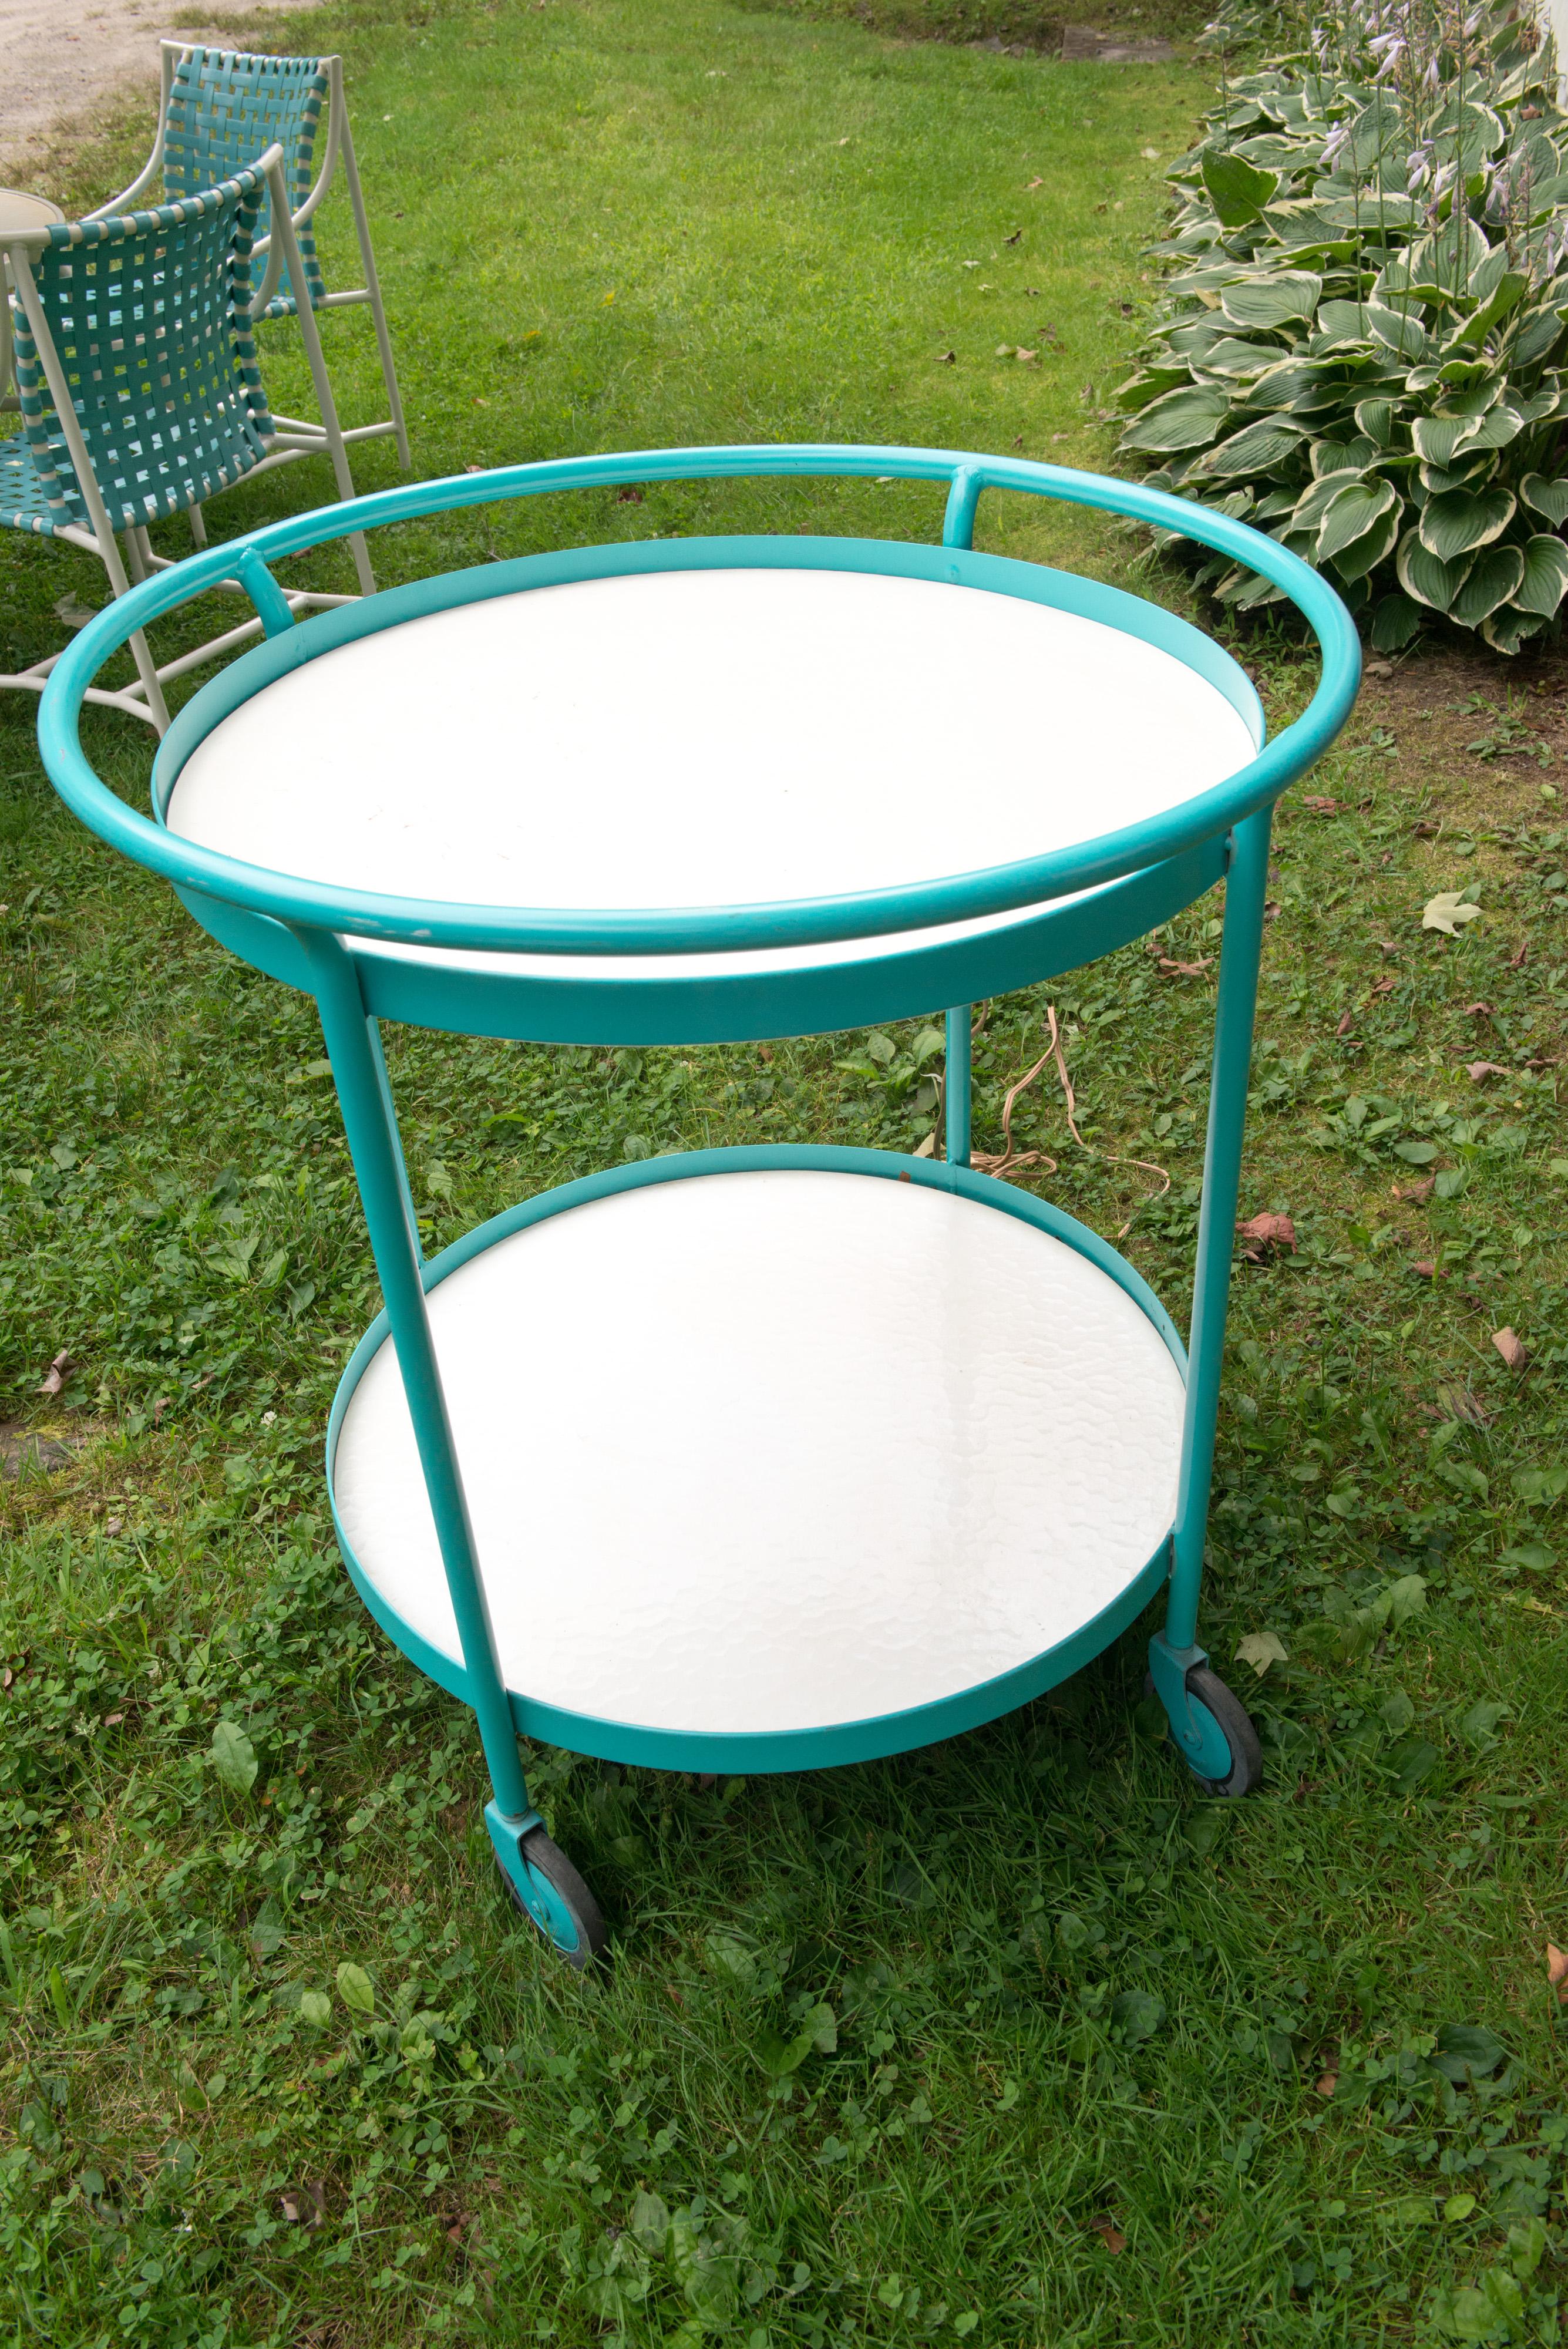 chariot rond Tropitone des années 1960 en aluminium poudré turquoise avec deux surfaces en stratifié blanc. Autres pièces vendues séparément pour cet ensemble : Une superbe table et 4 chaises en vinyle turquoise avec un superbe parasol en toile